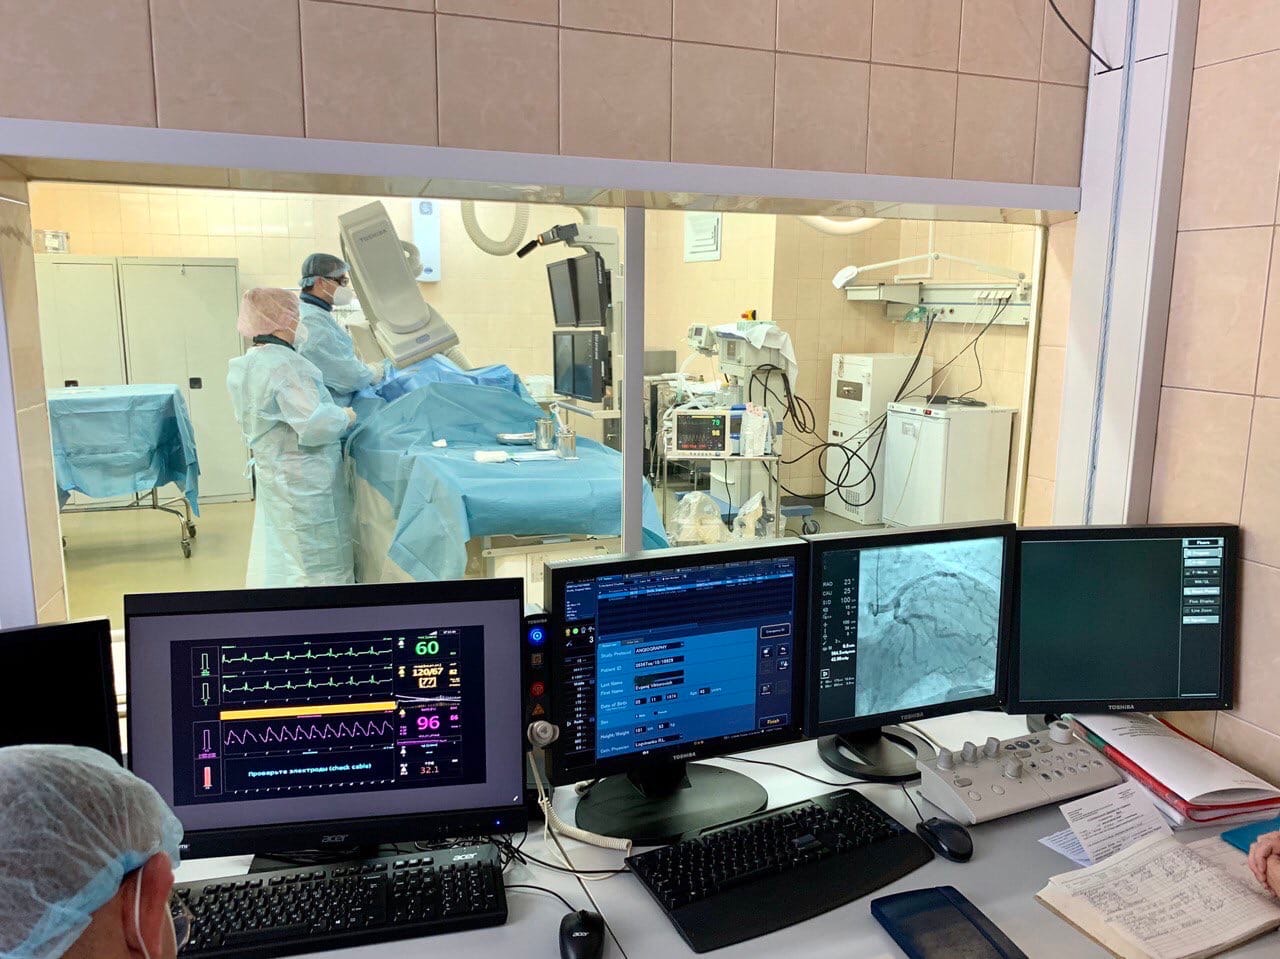 Порядка 1500 лечебных эндоваскулярных процедур выполнили рентгенохирурги больницы Вересаева в 2020 году